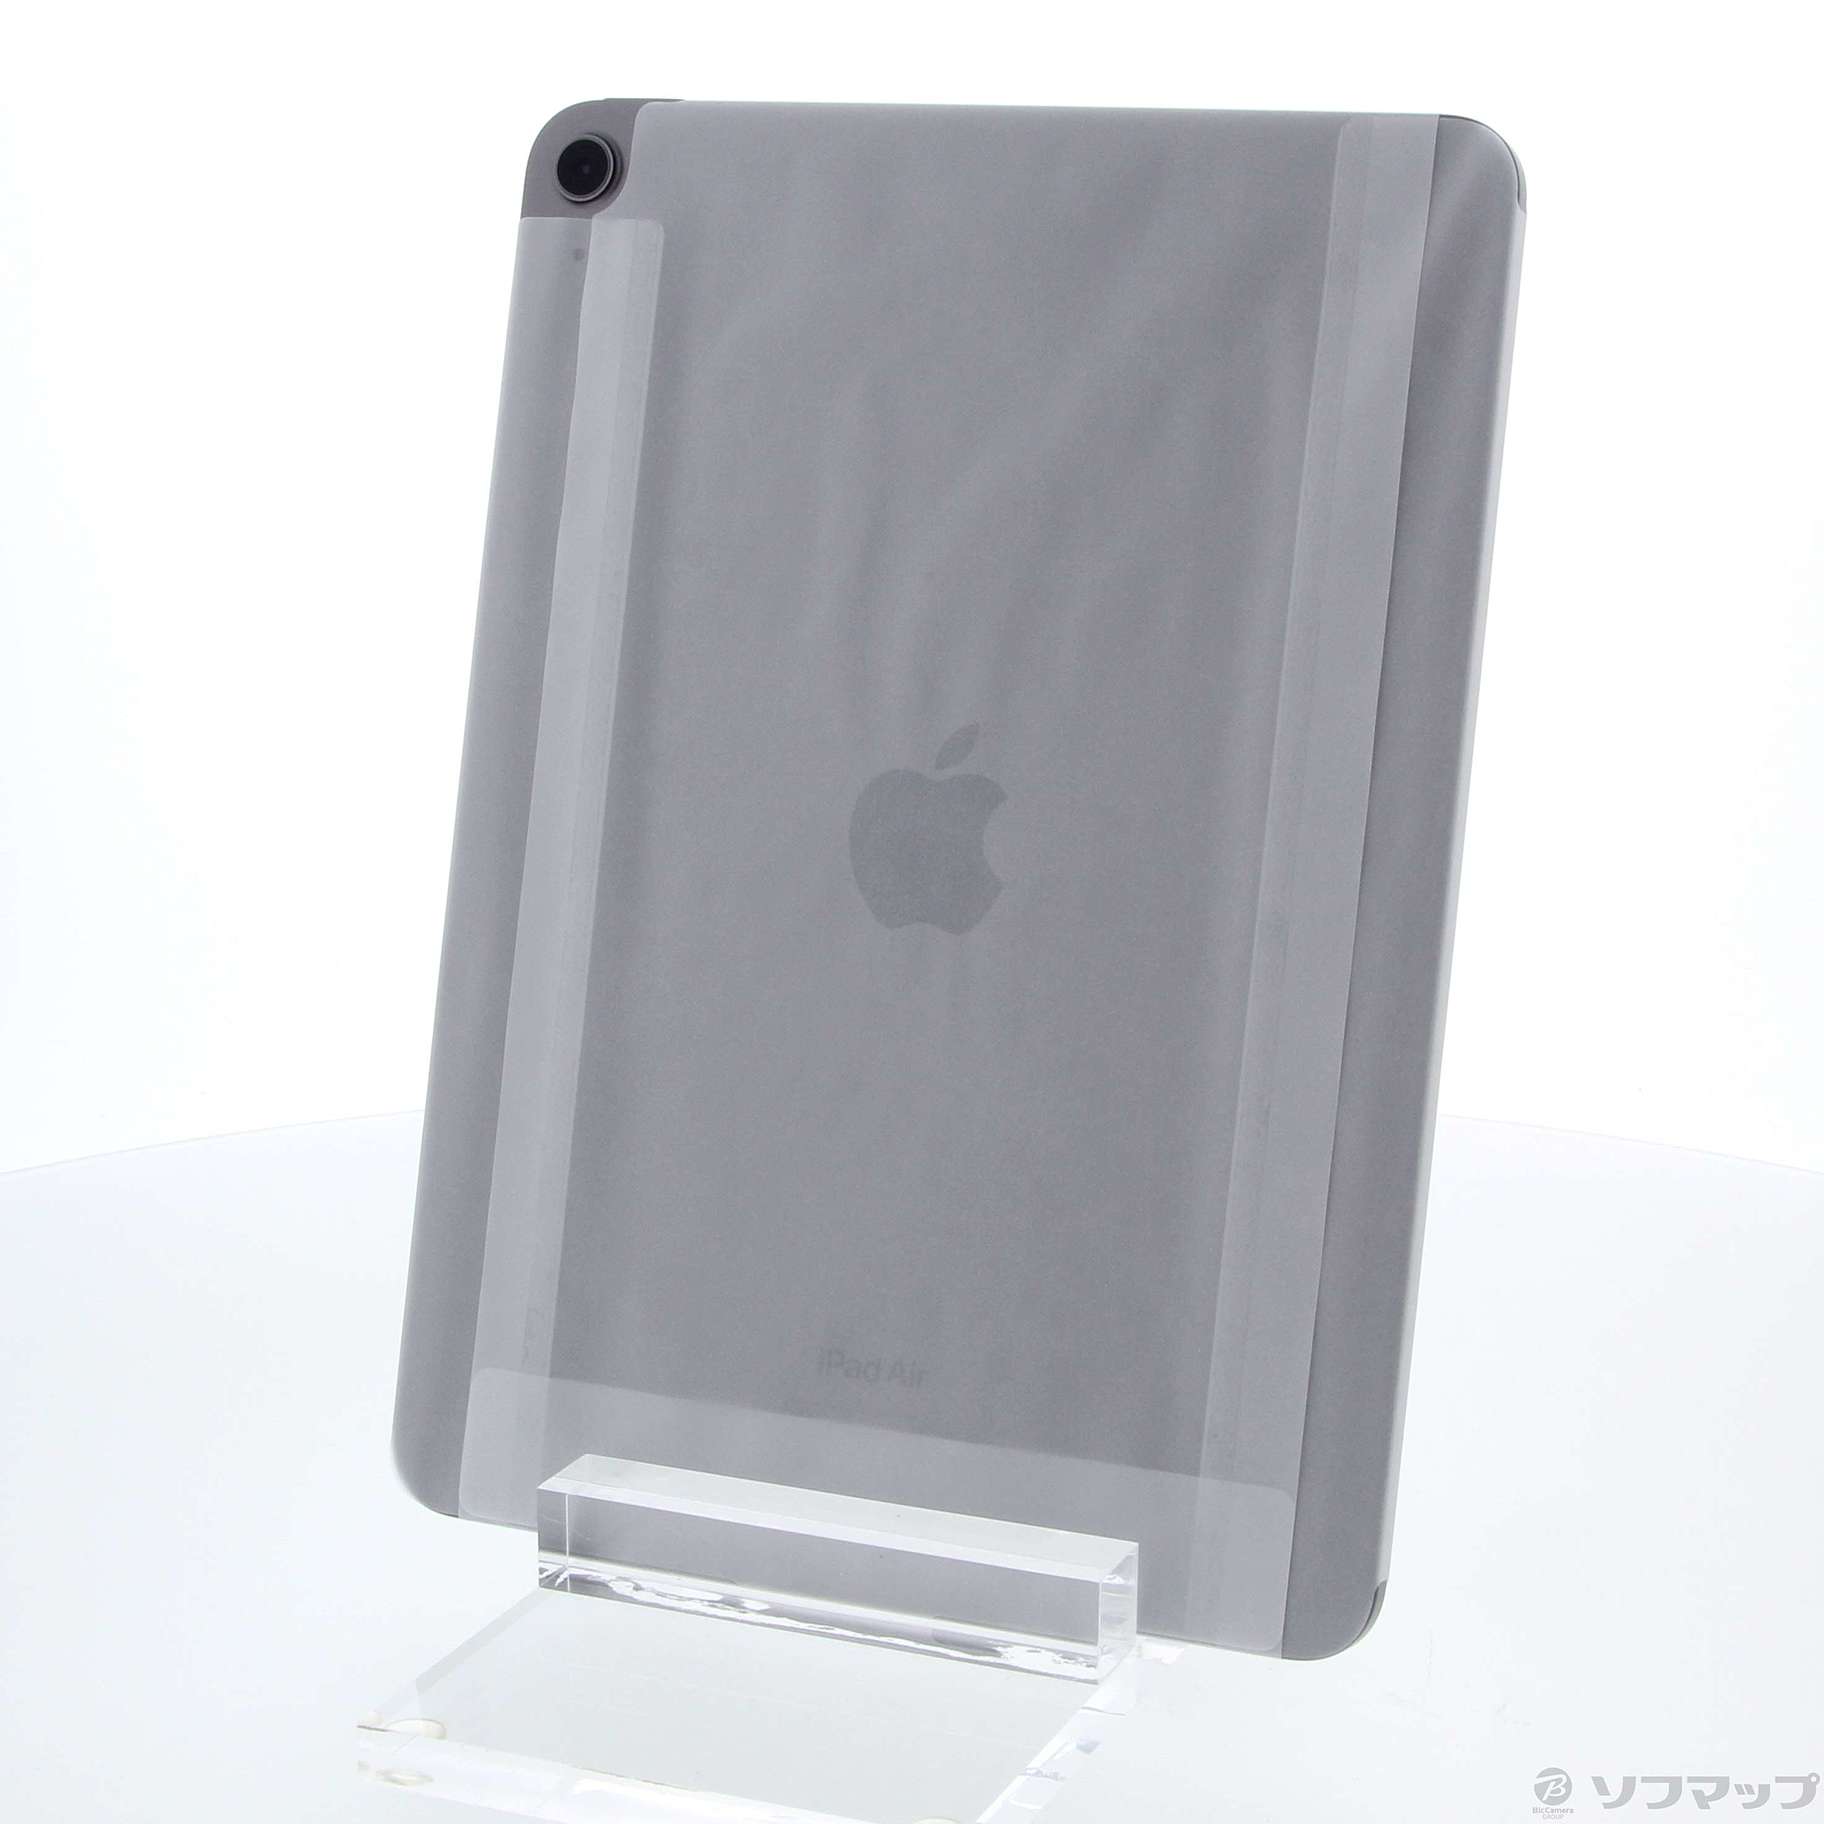 【新品未開封】iPad Air 第5世代 64GB Wi-Fi スペースグレイ